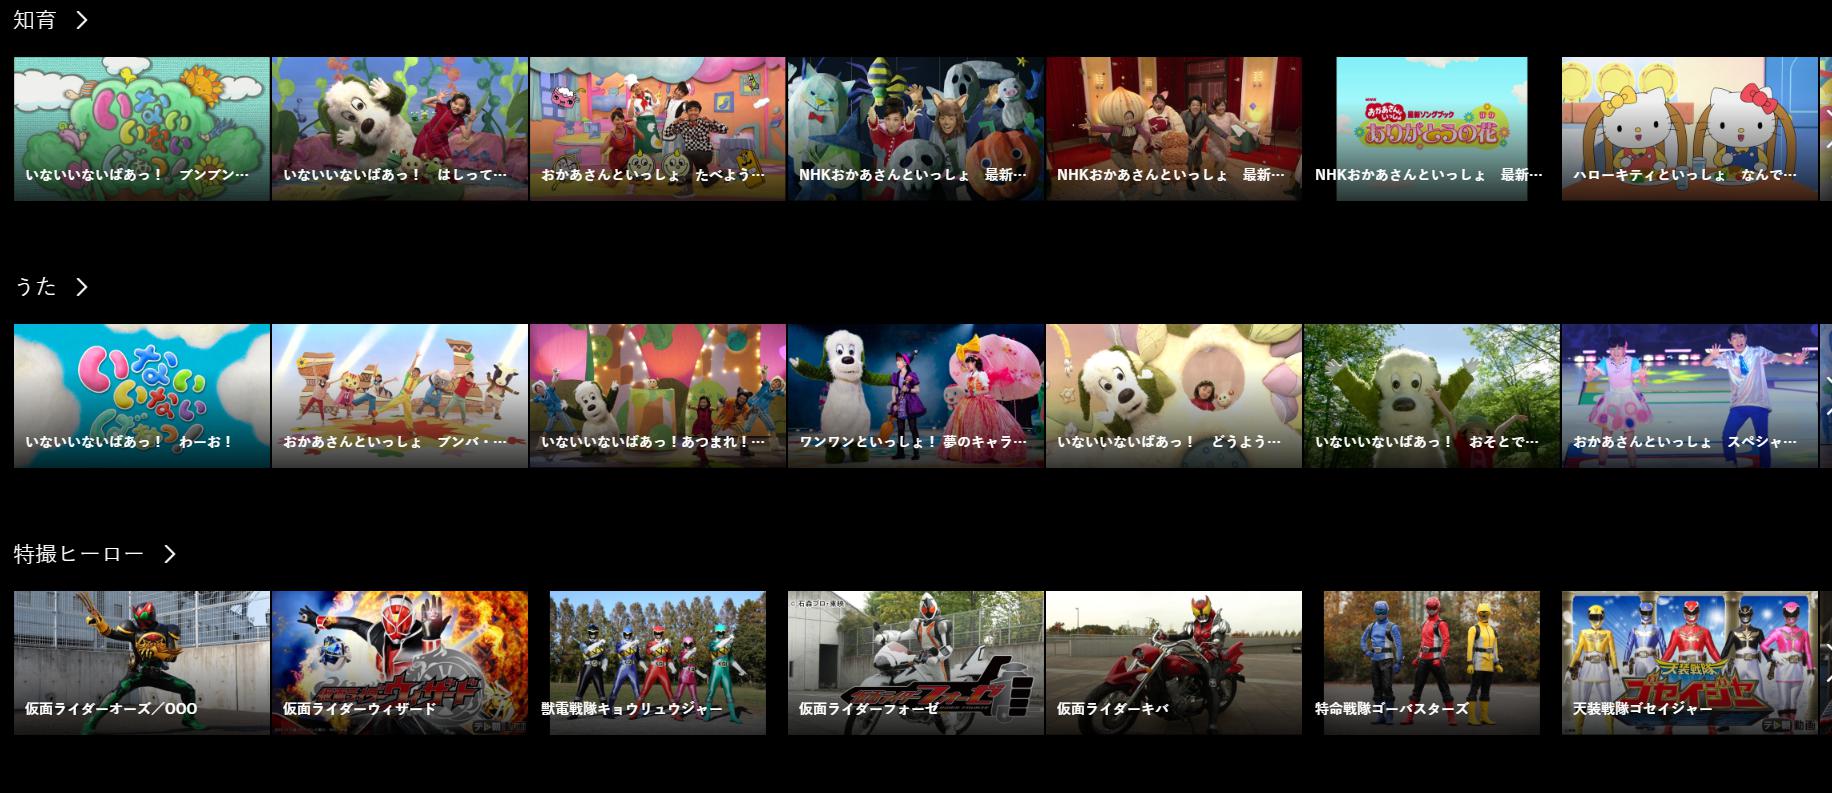 Dtvアニメは少ない はウソ Dtvおすすめアニメと人気ランキング大公開 Vodチャンネル